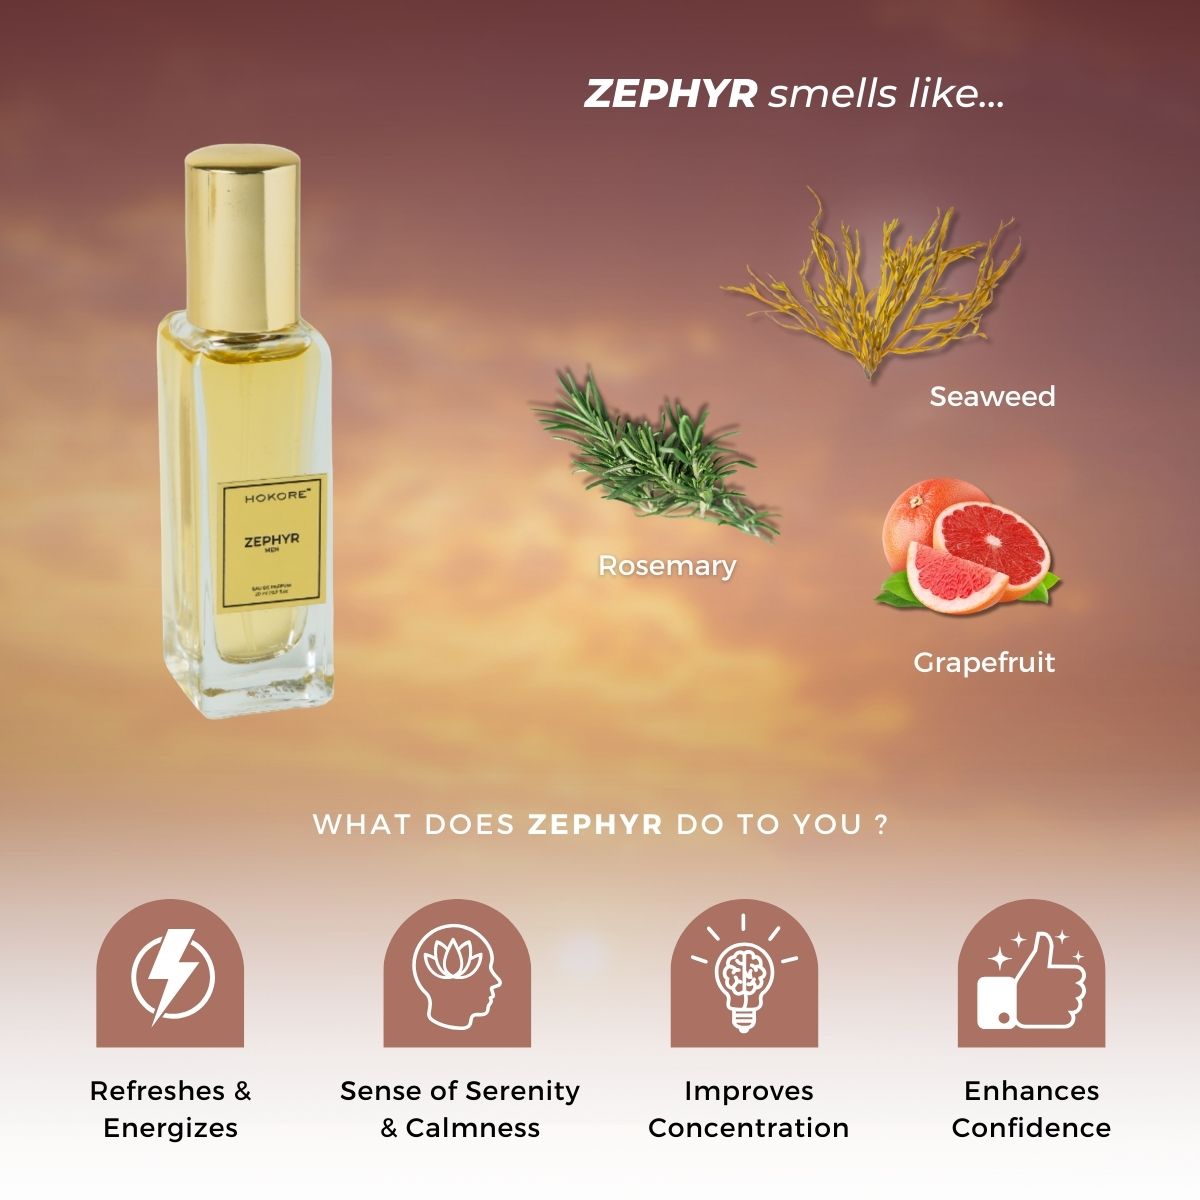 Zephyr - Perfume For Men | 20 ml